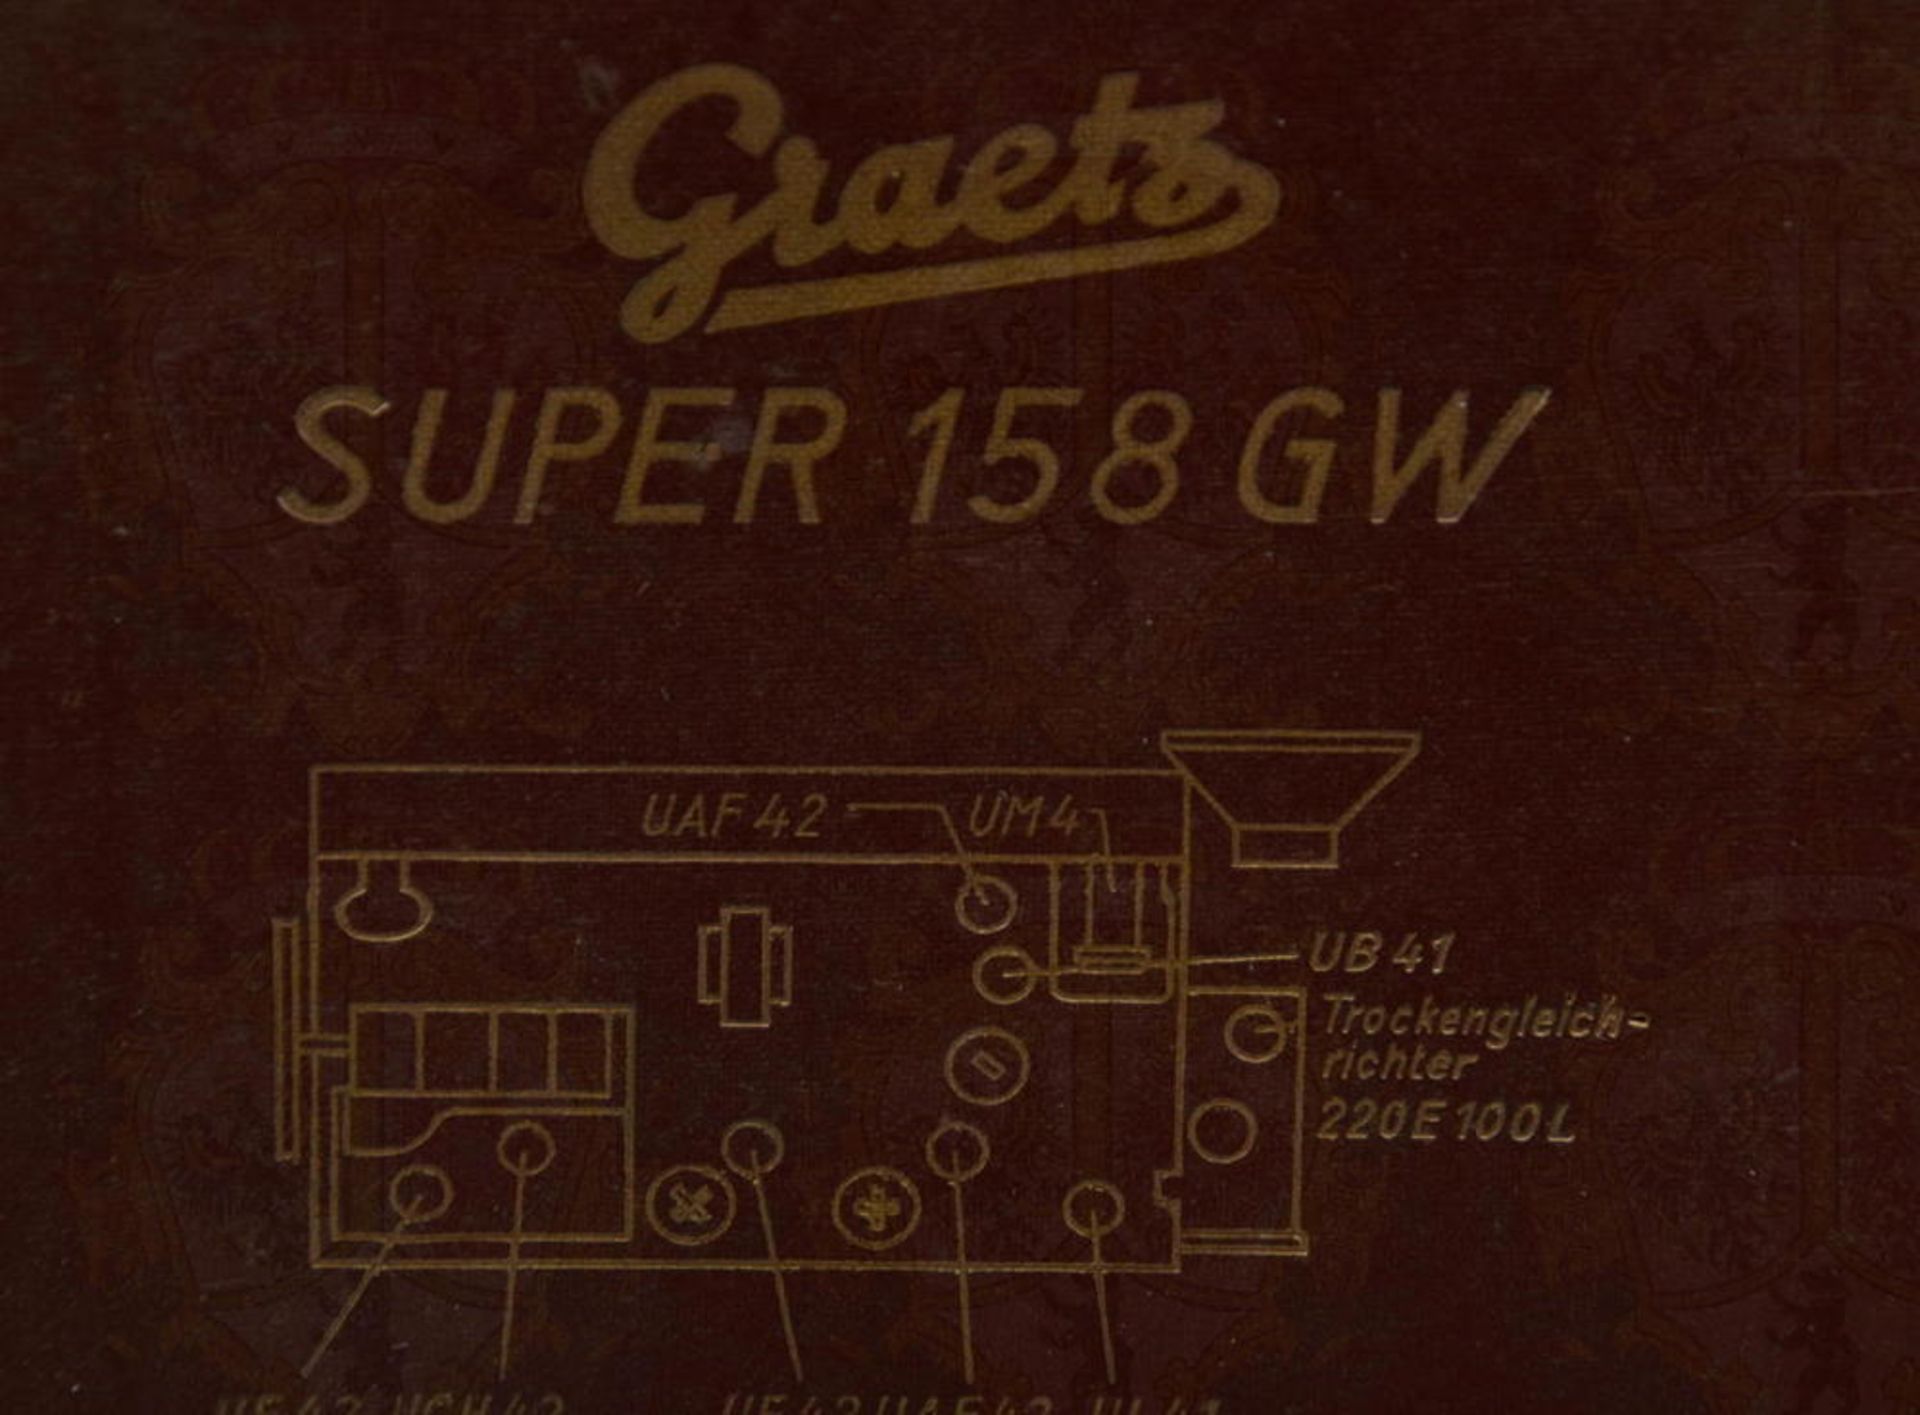 Radio Graetz Super 158 GW - Image 5 of 5